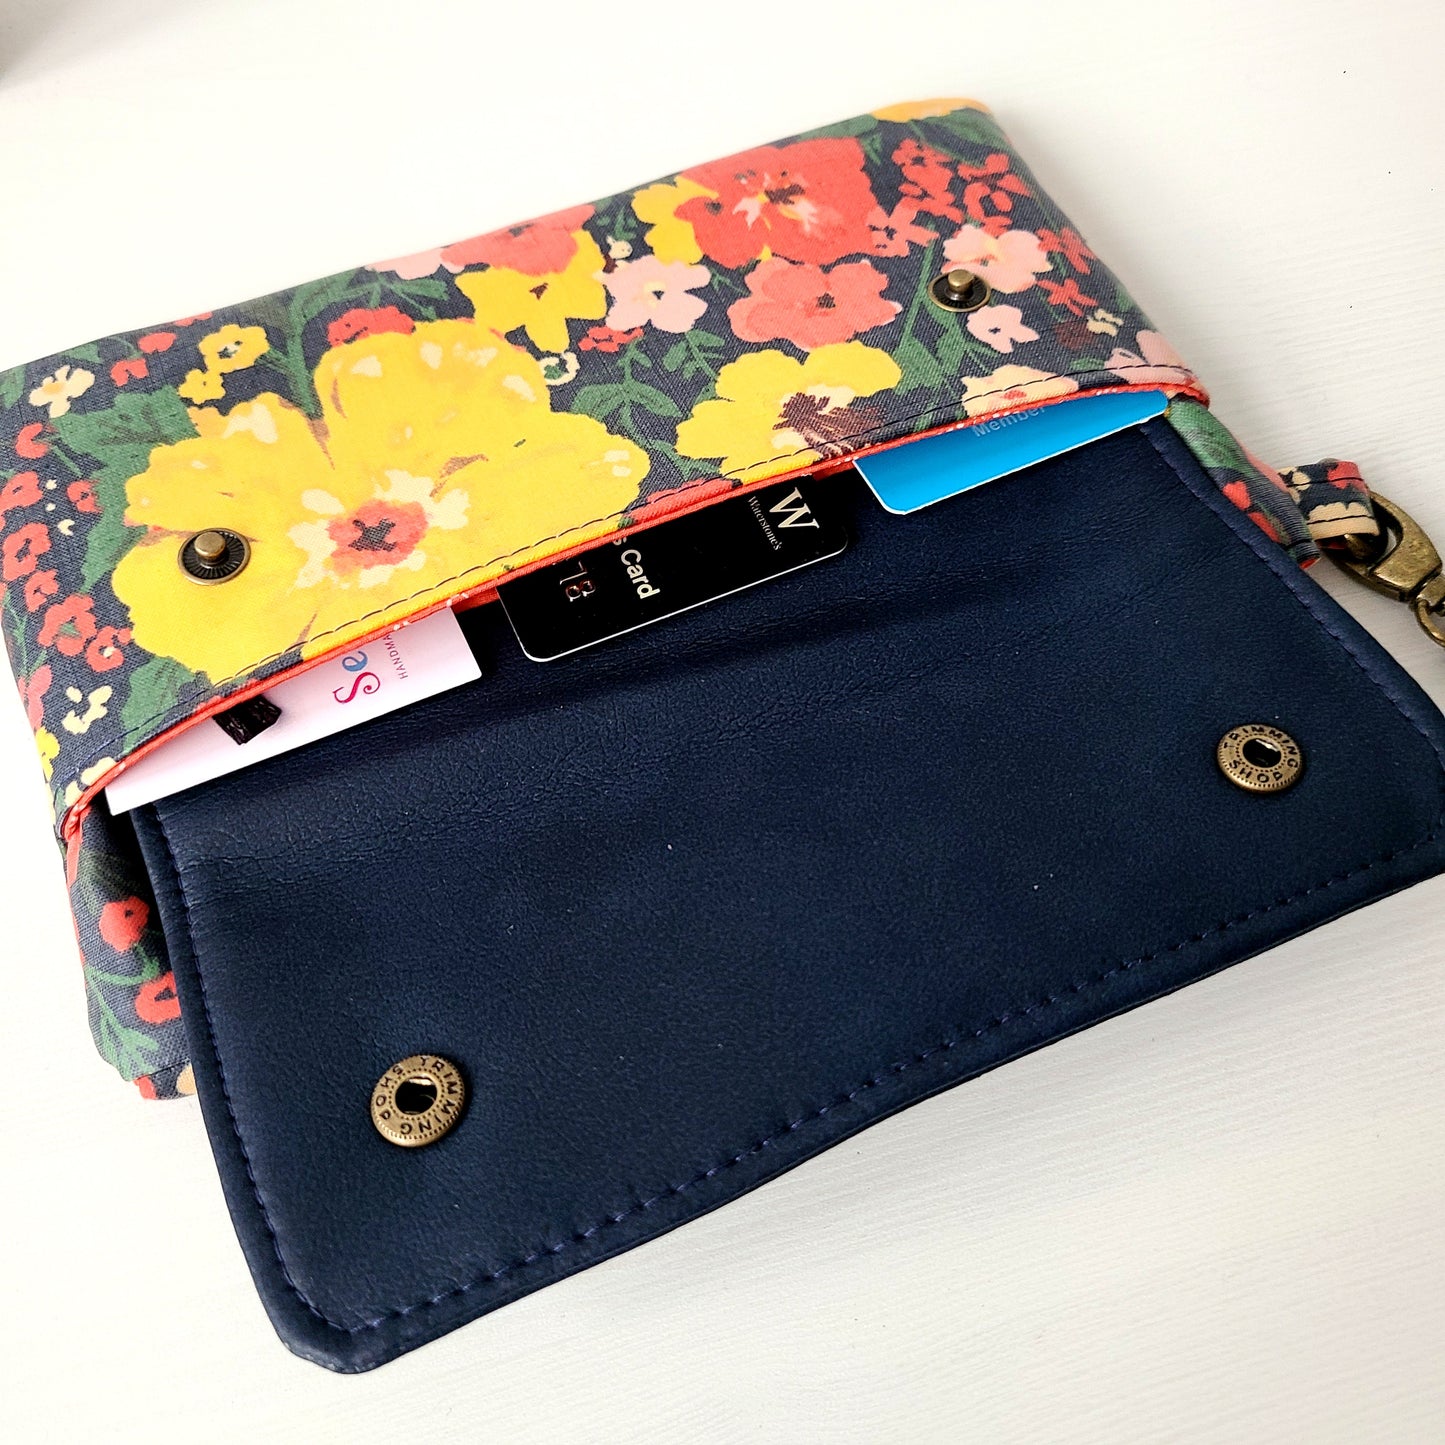 Wildflowers phone clutch wallet